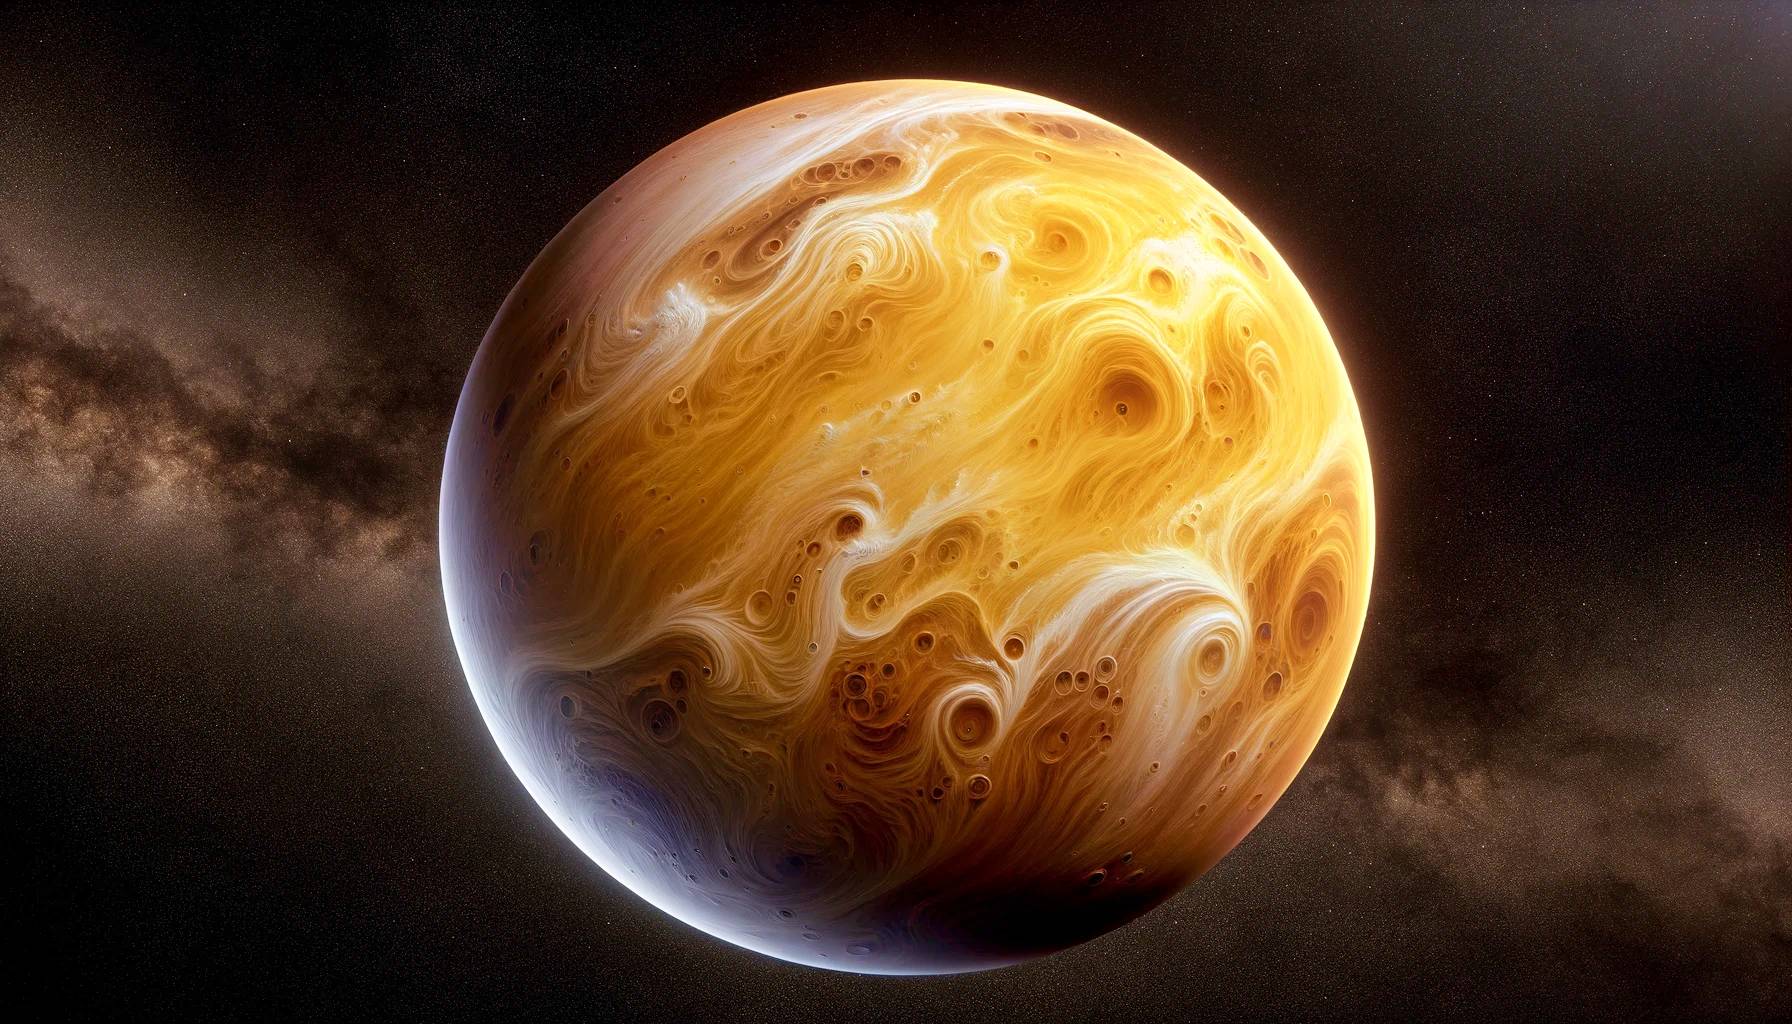 Planeta Venus IMPRESIONANTE Descubrimiento Primera Humanidad